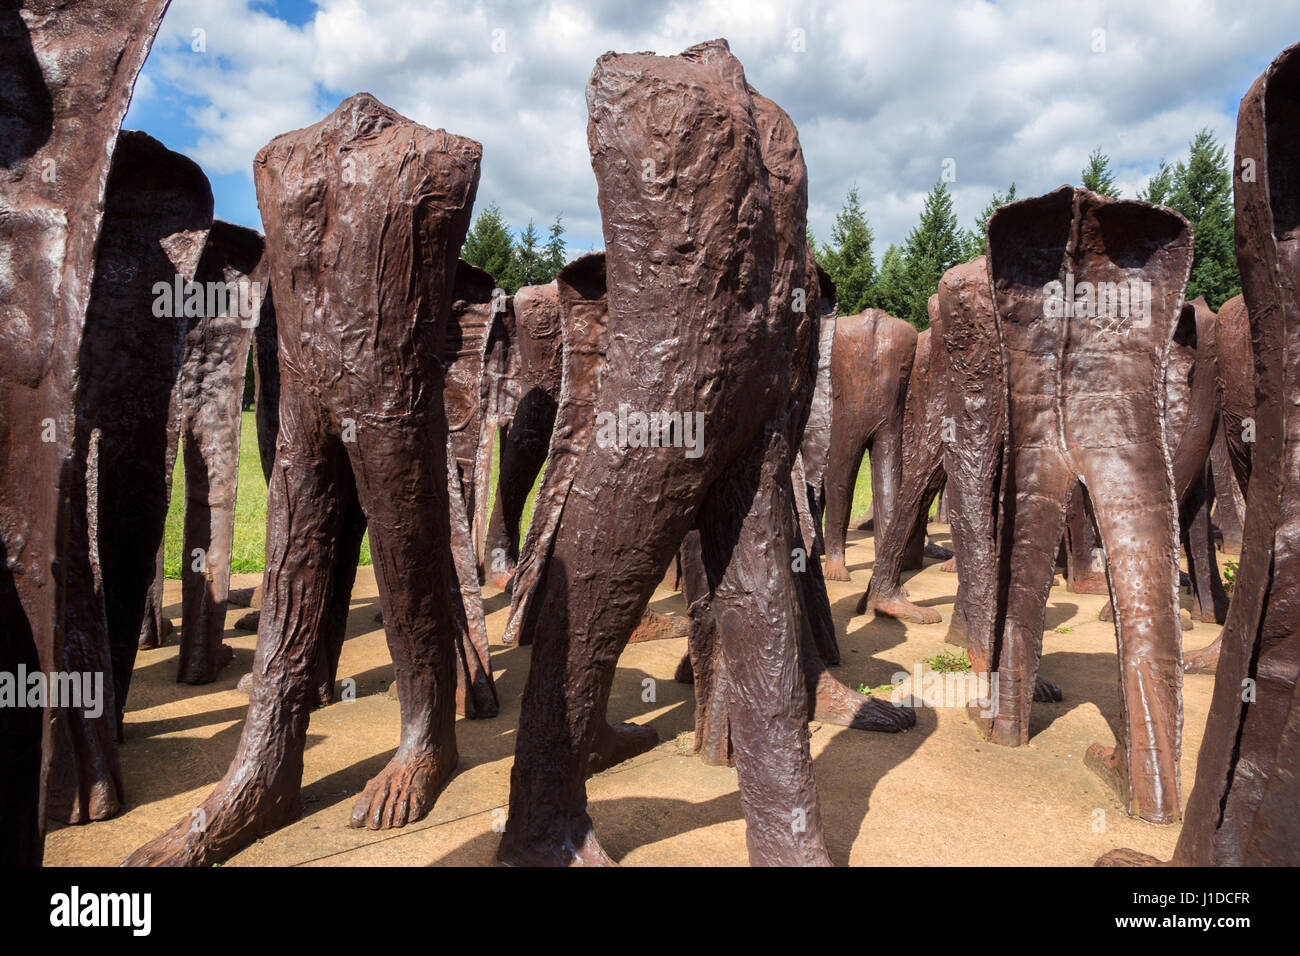 Posen, Polen - 20. August 2014: Iron 2 Meter hohe kopflosen Figuren marschieren ziellos durch den Park der Zitadelle in Posen. Das Denkmal wird Unrecog genannt. Stockfoto